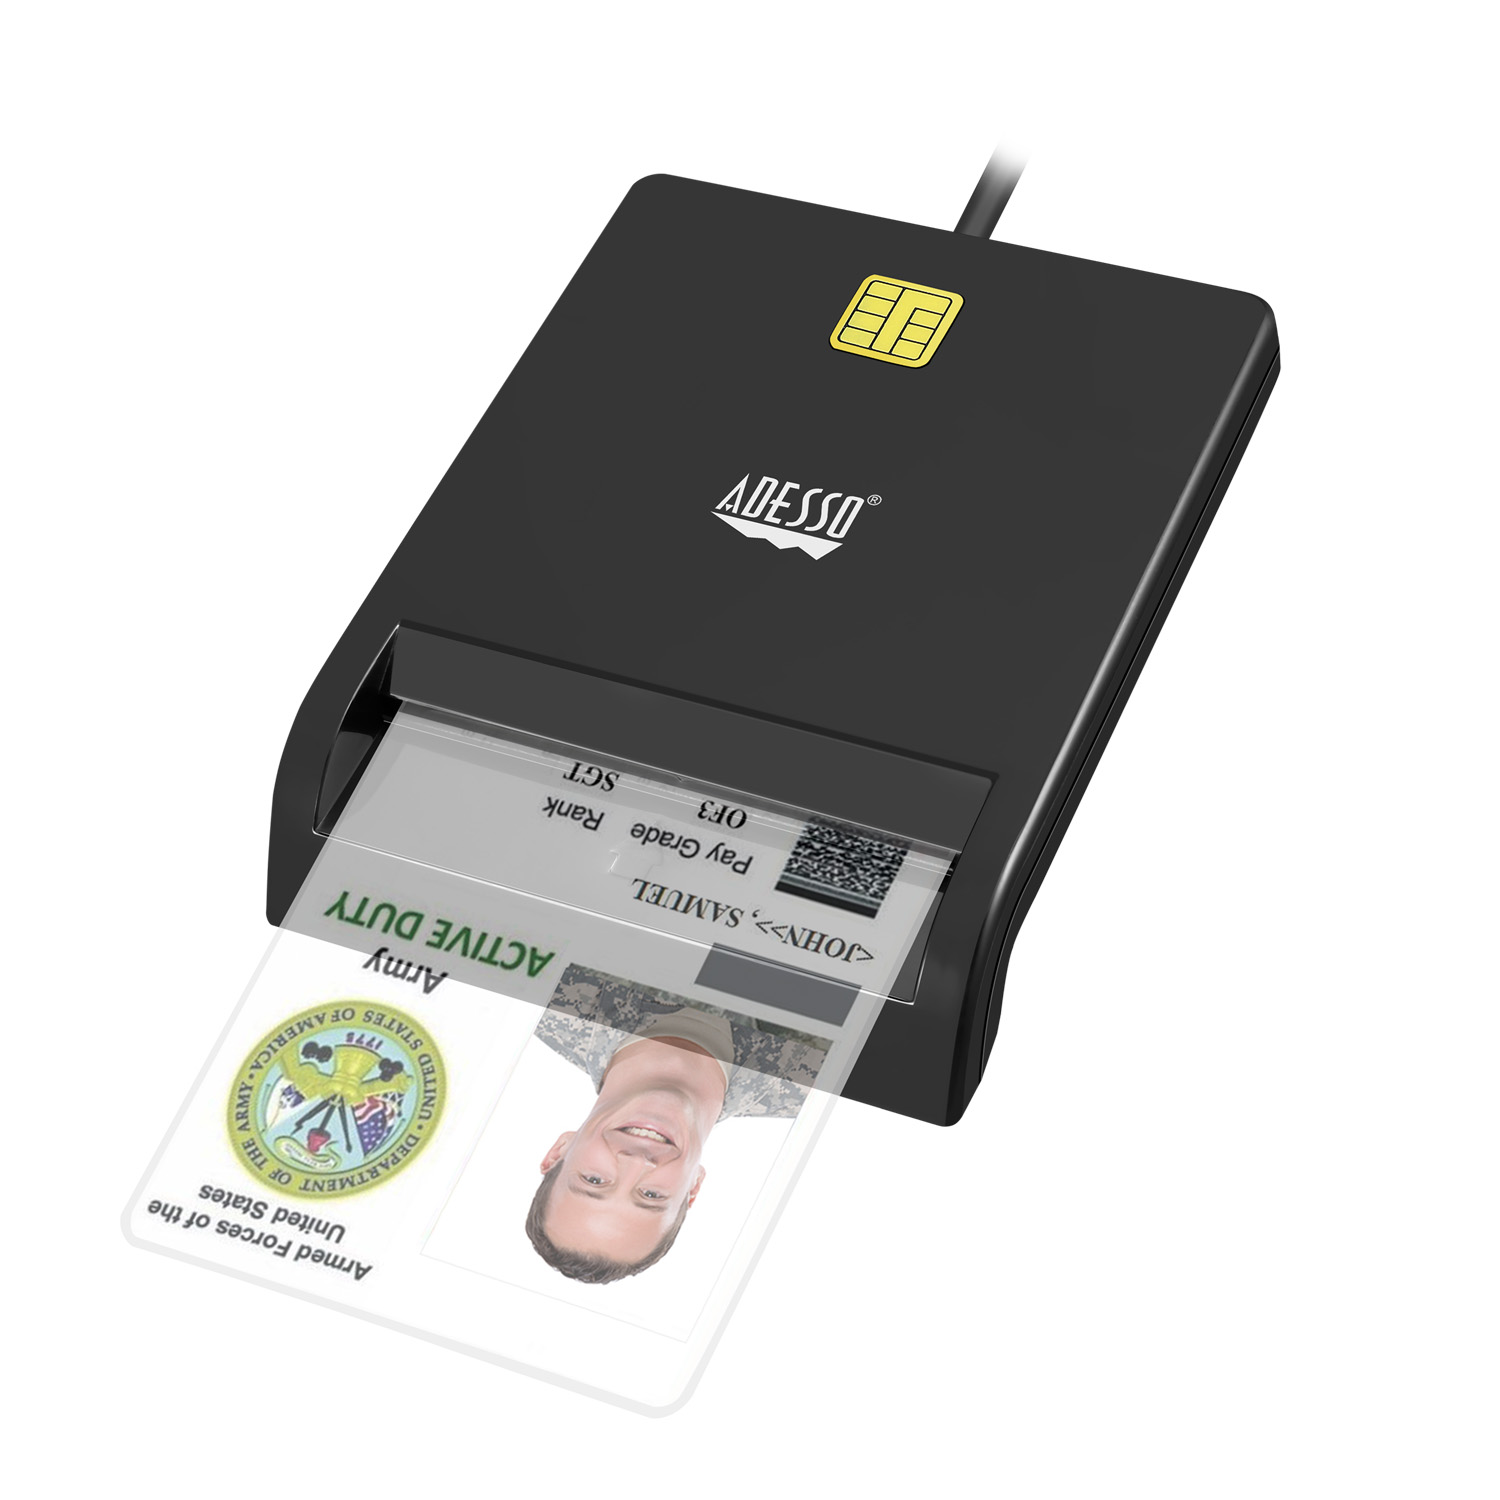 Smart Card Reader - BCI Imaging Supplies